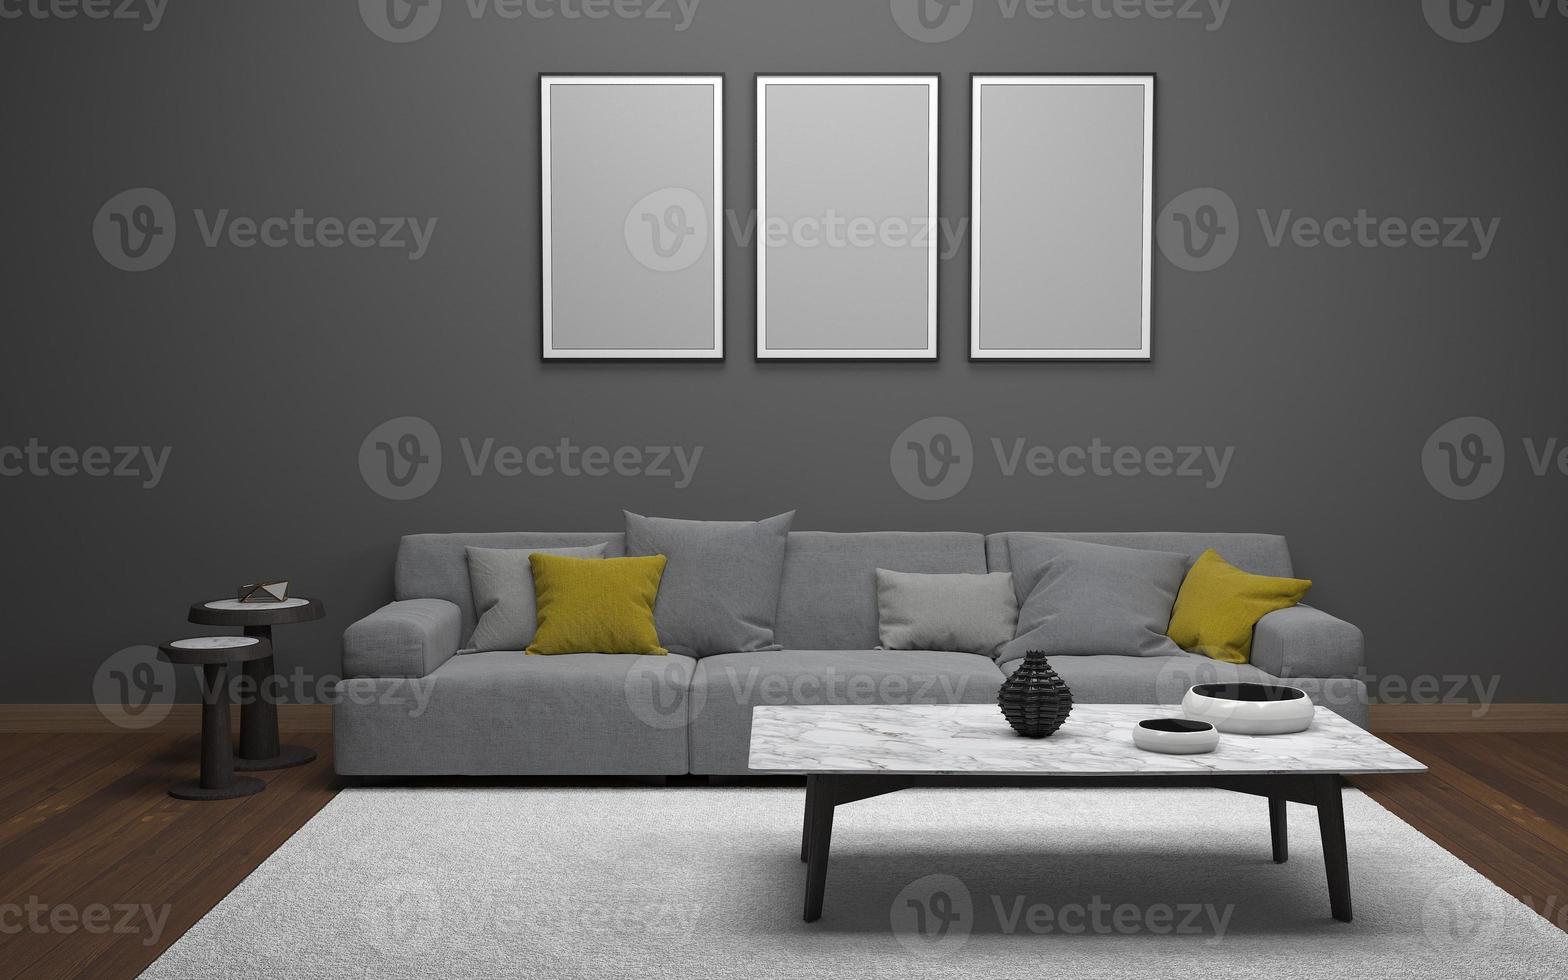 3D-Rendering des modernen Wohnzimmers mit Sofa - Couch und Tisch realistisches Modell foto